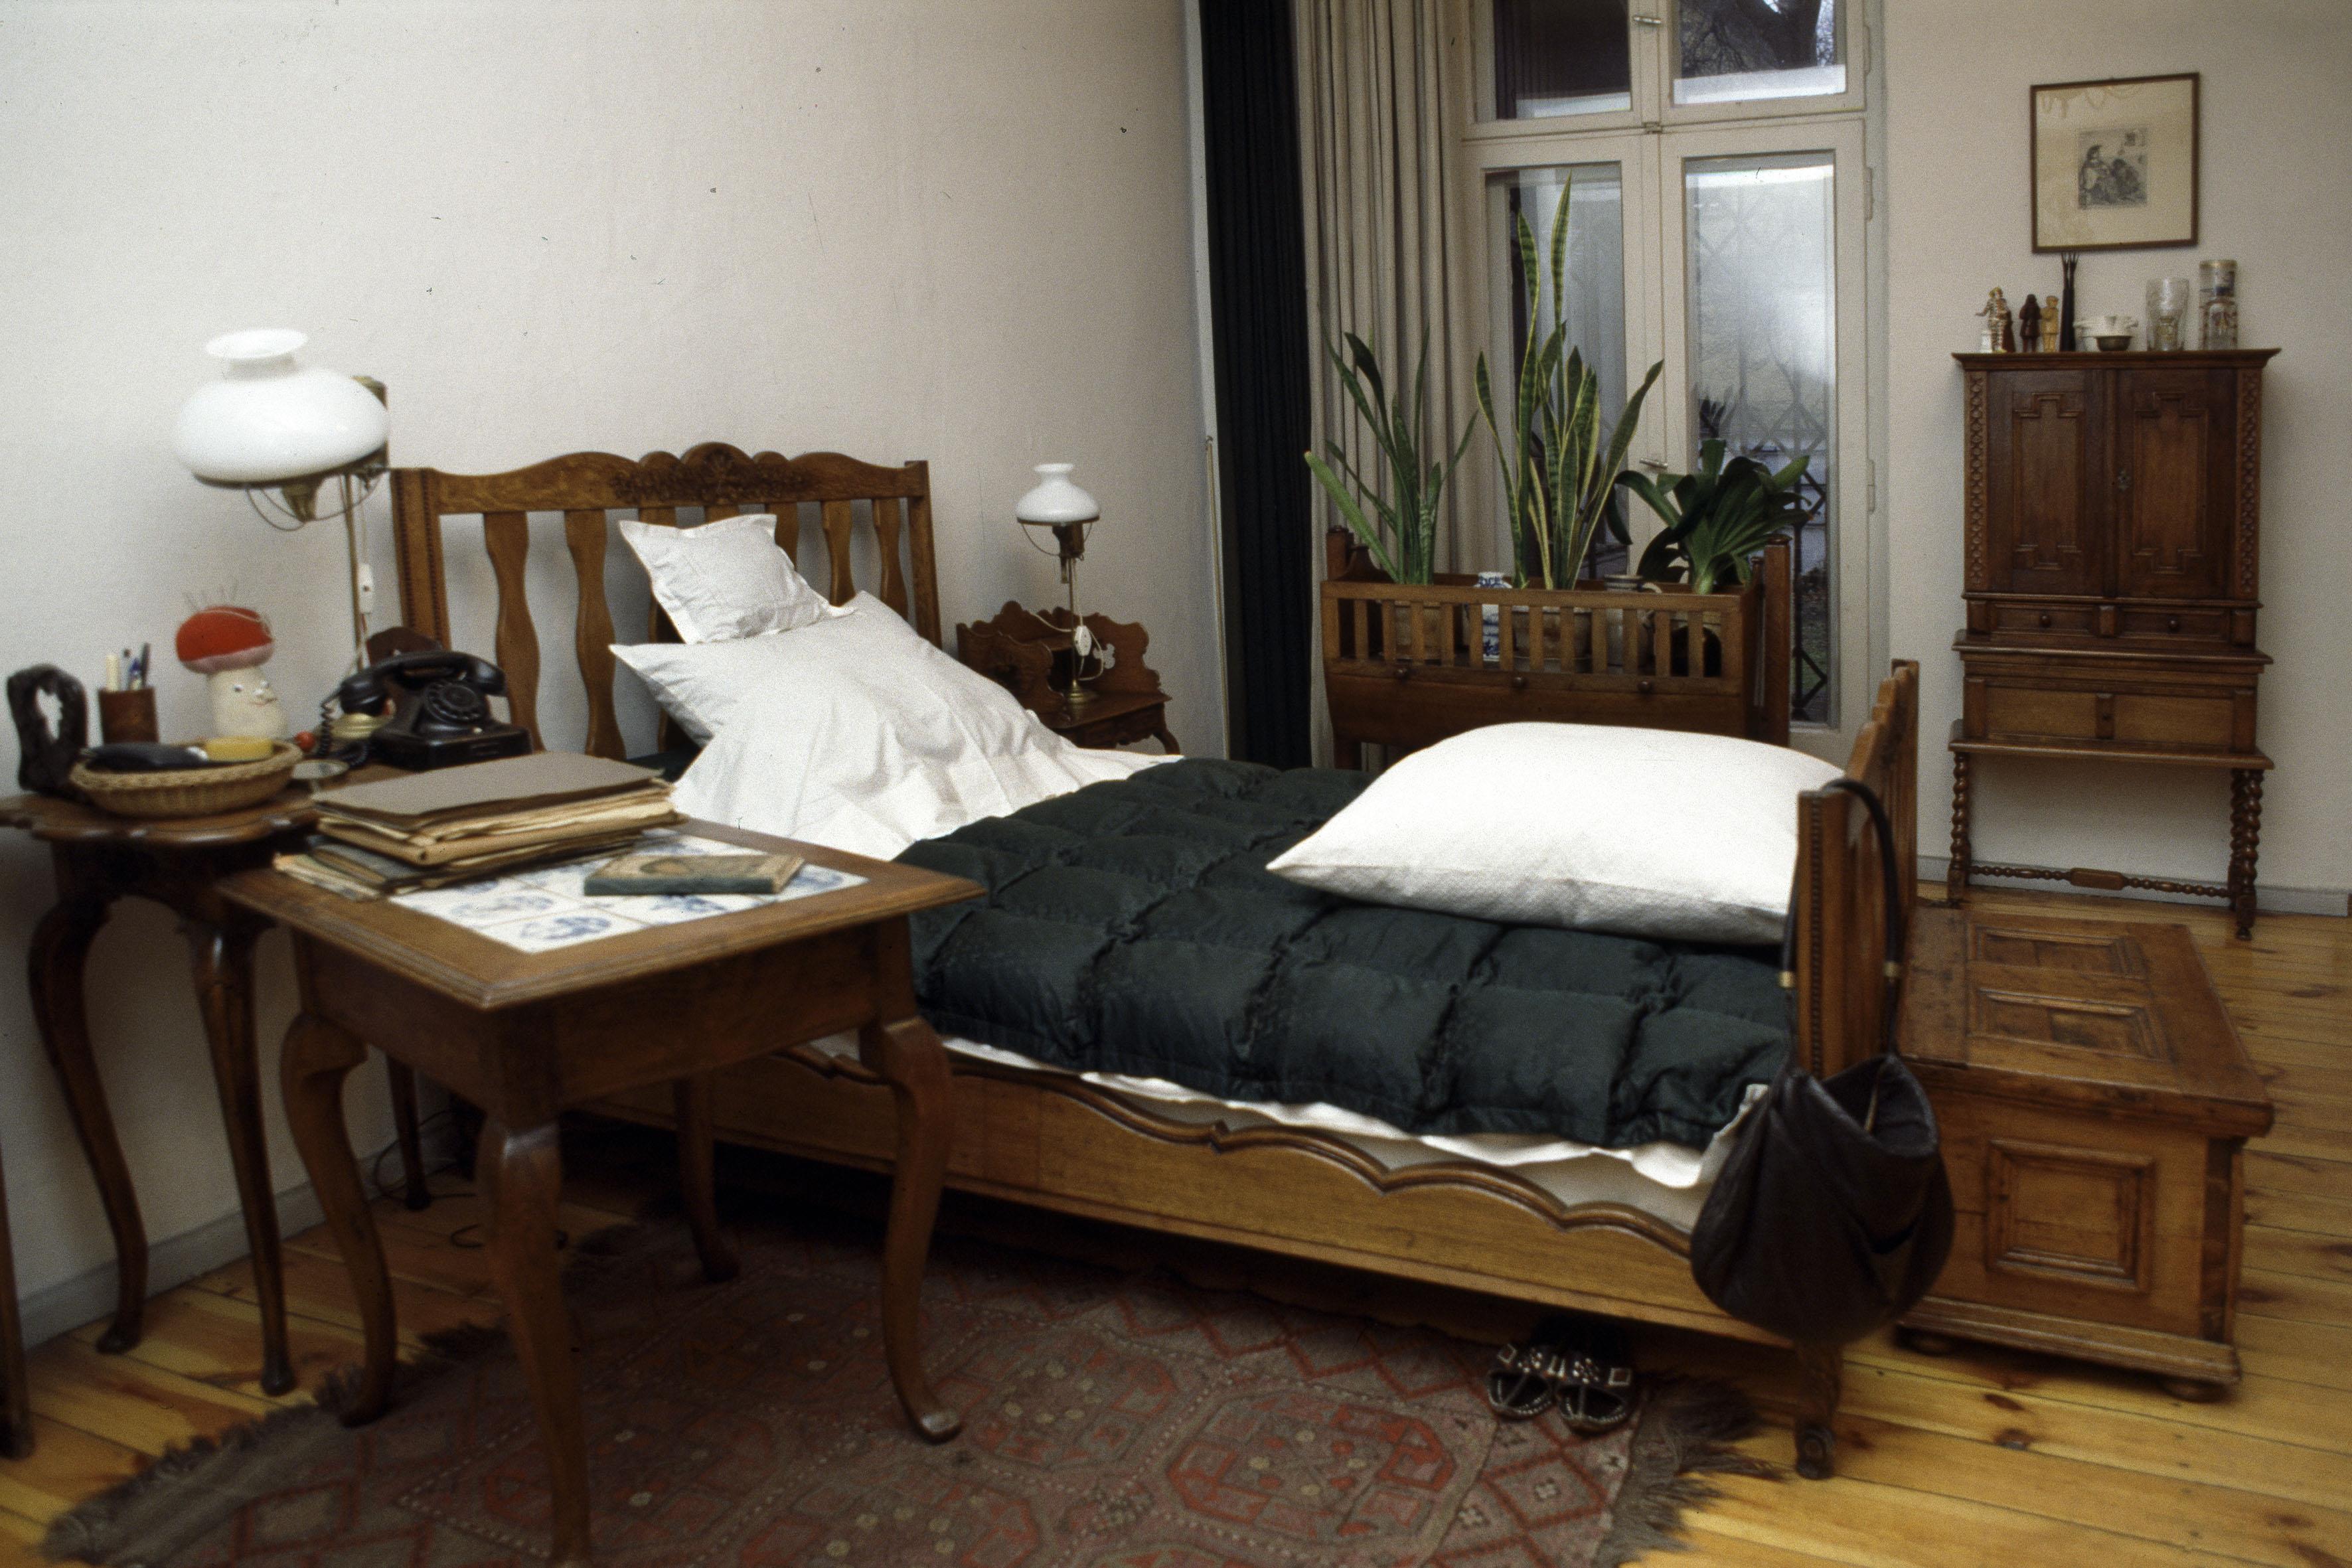 Berlino, Chausseestrasse, stanza da letto di Bertolt Brecht, dove lui e​ sua moglie Helene Weigel visse​ro fino al 1953.